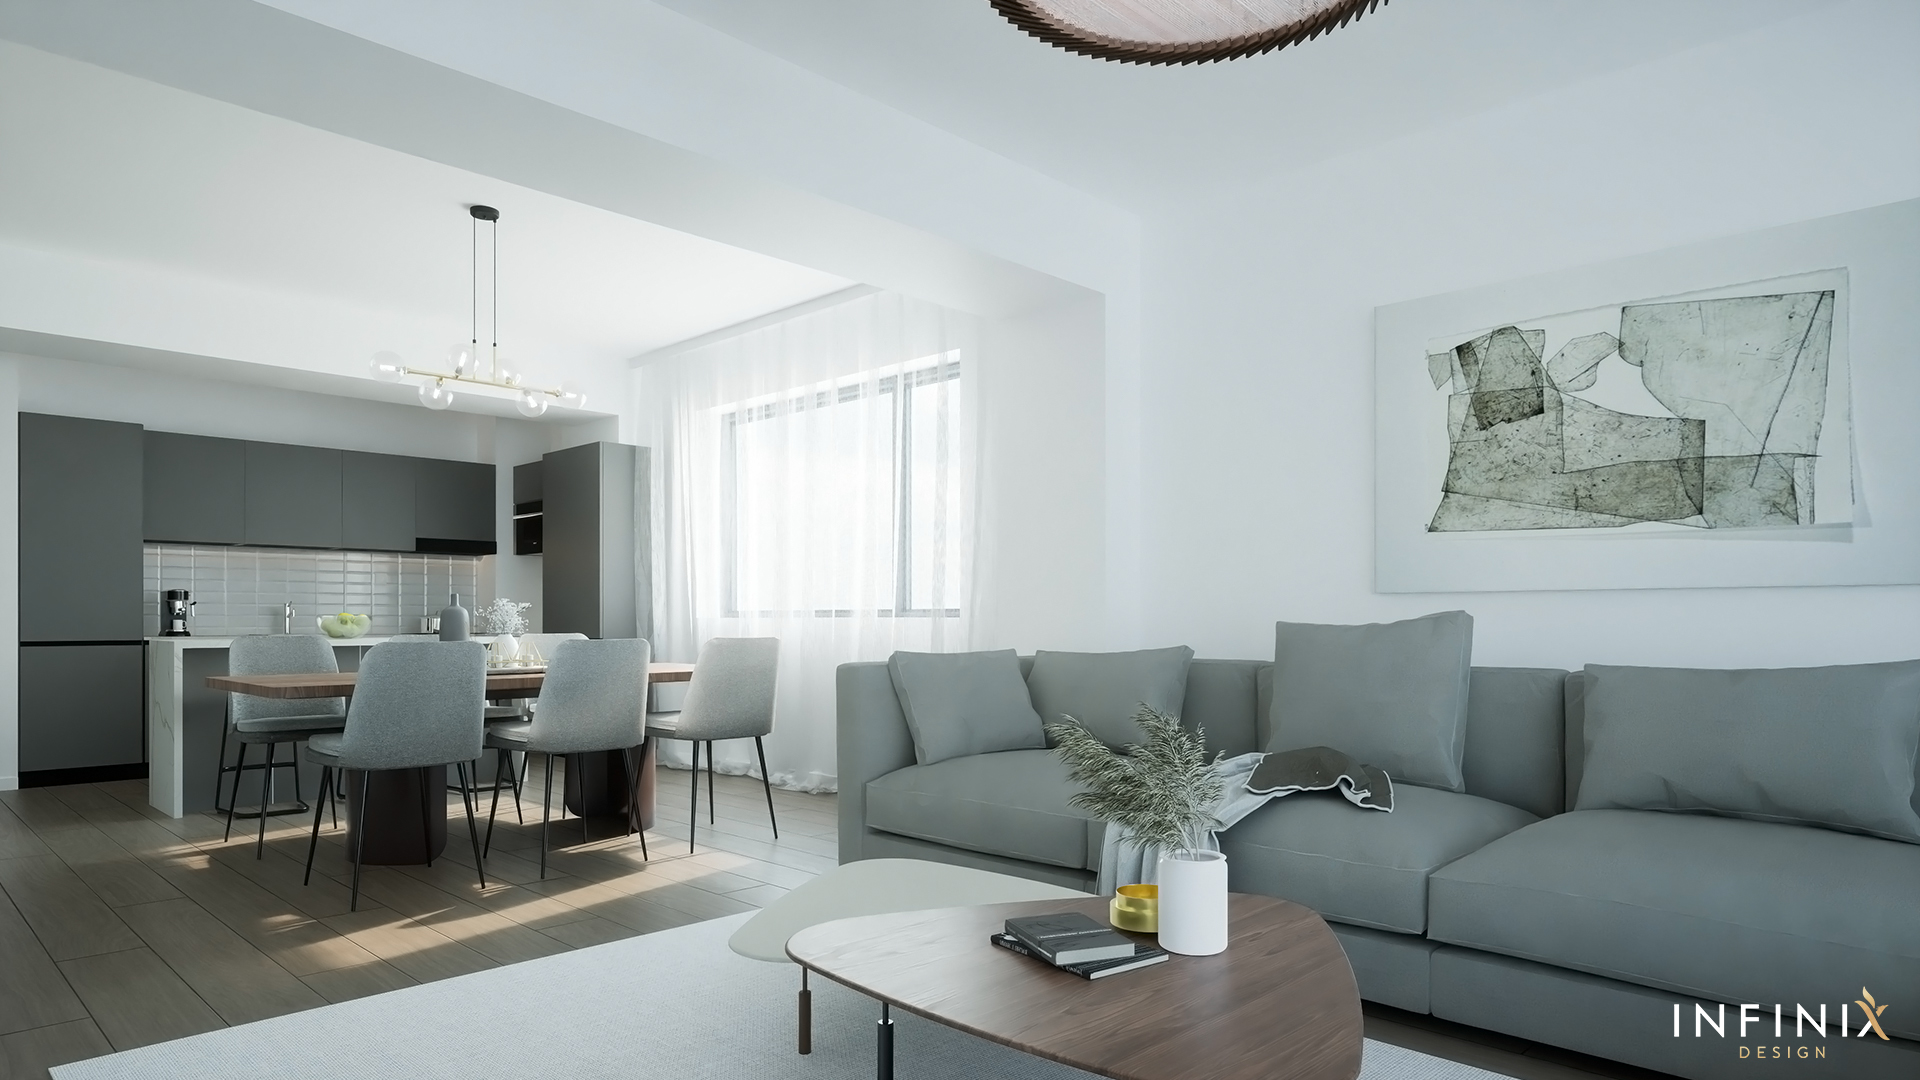 012.13_Infinix_design_interior_apartament